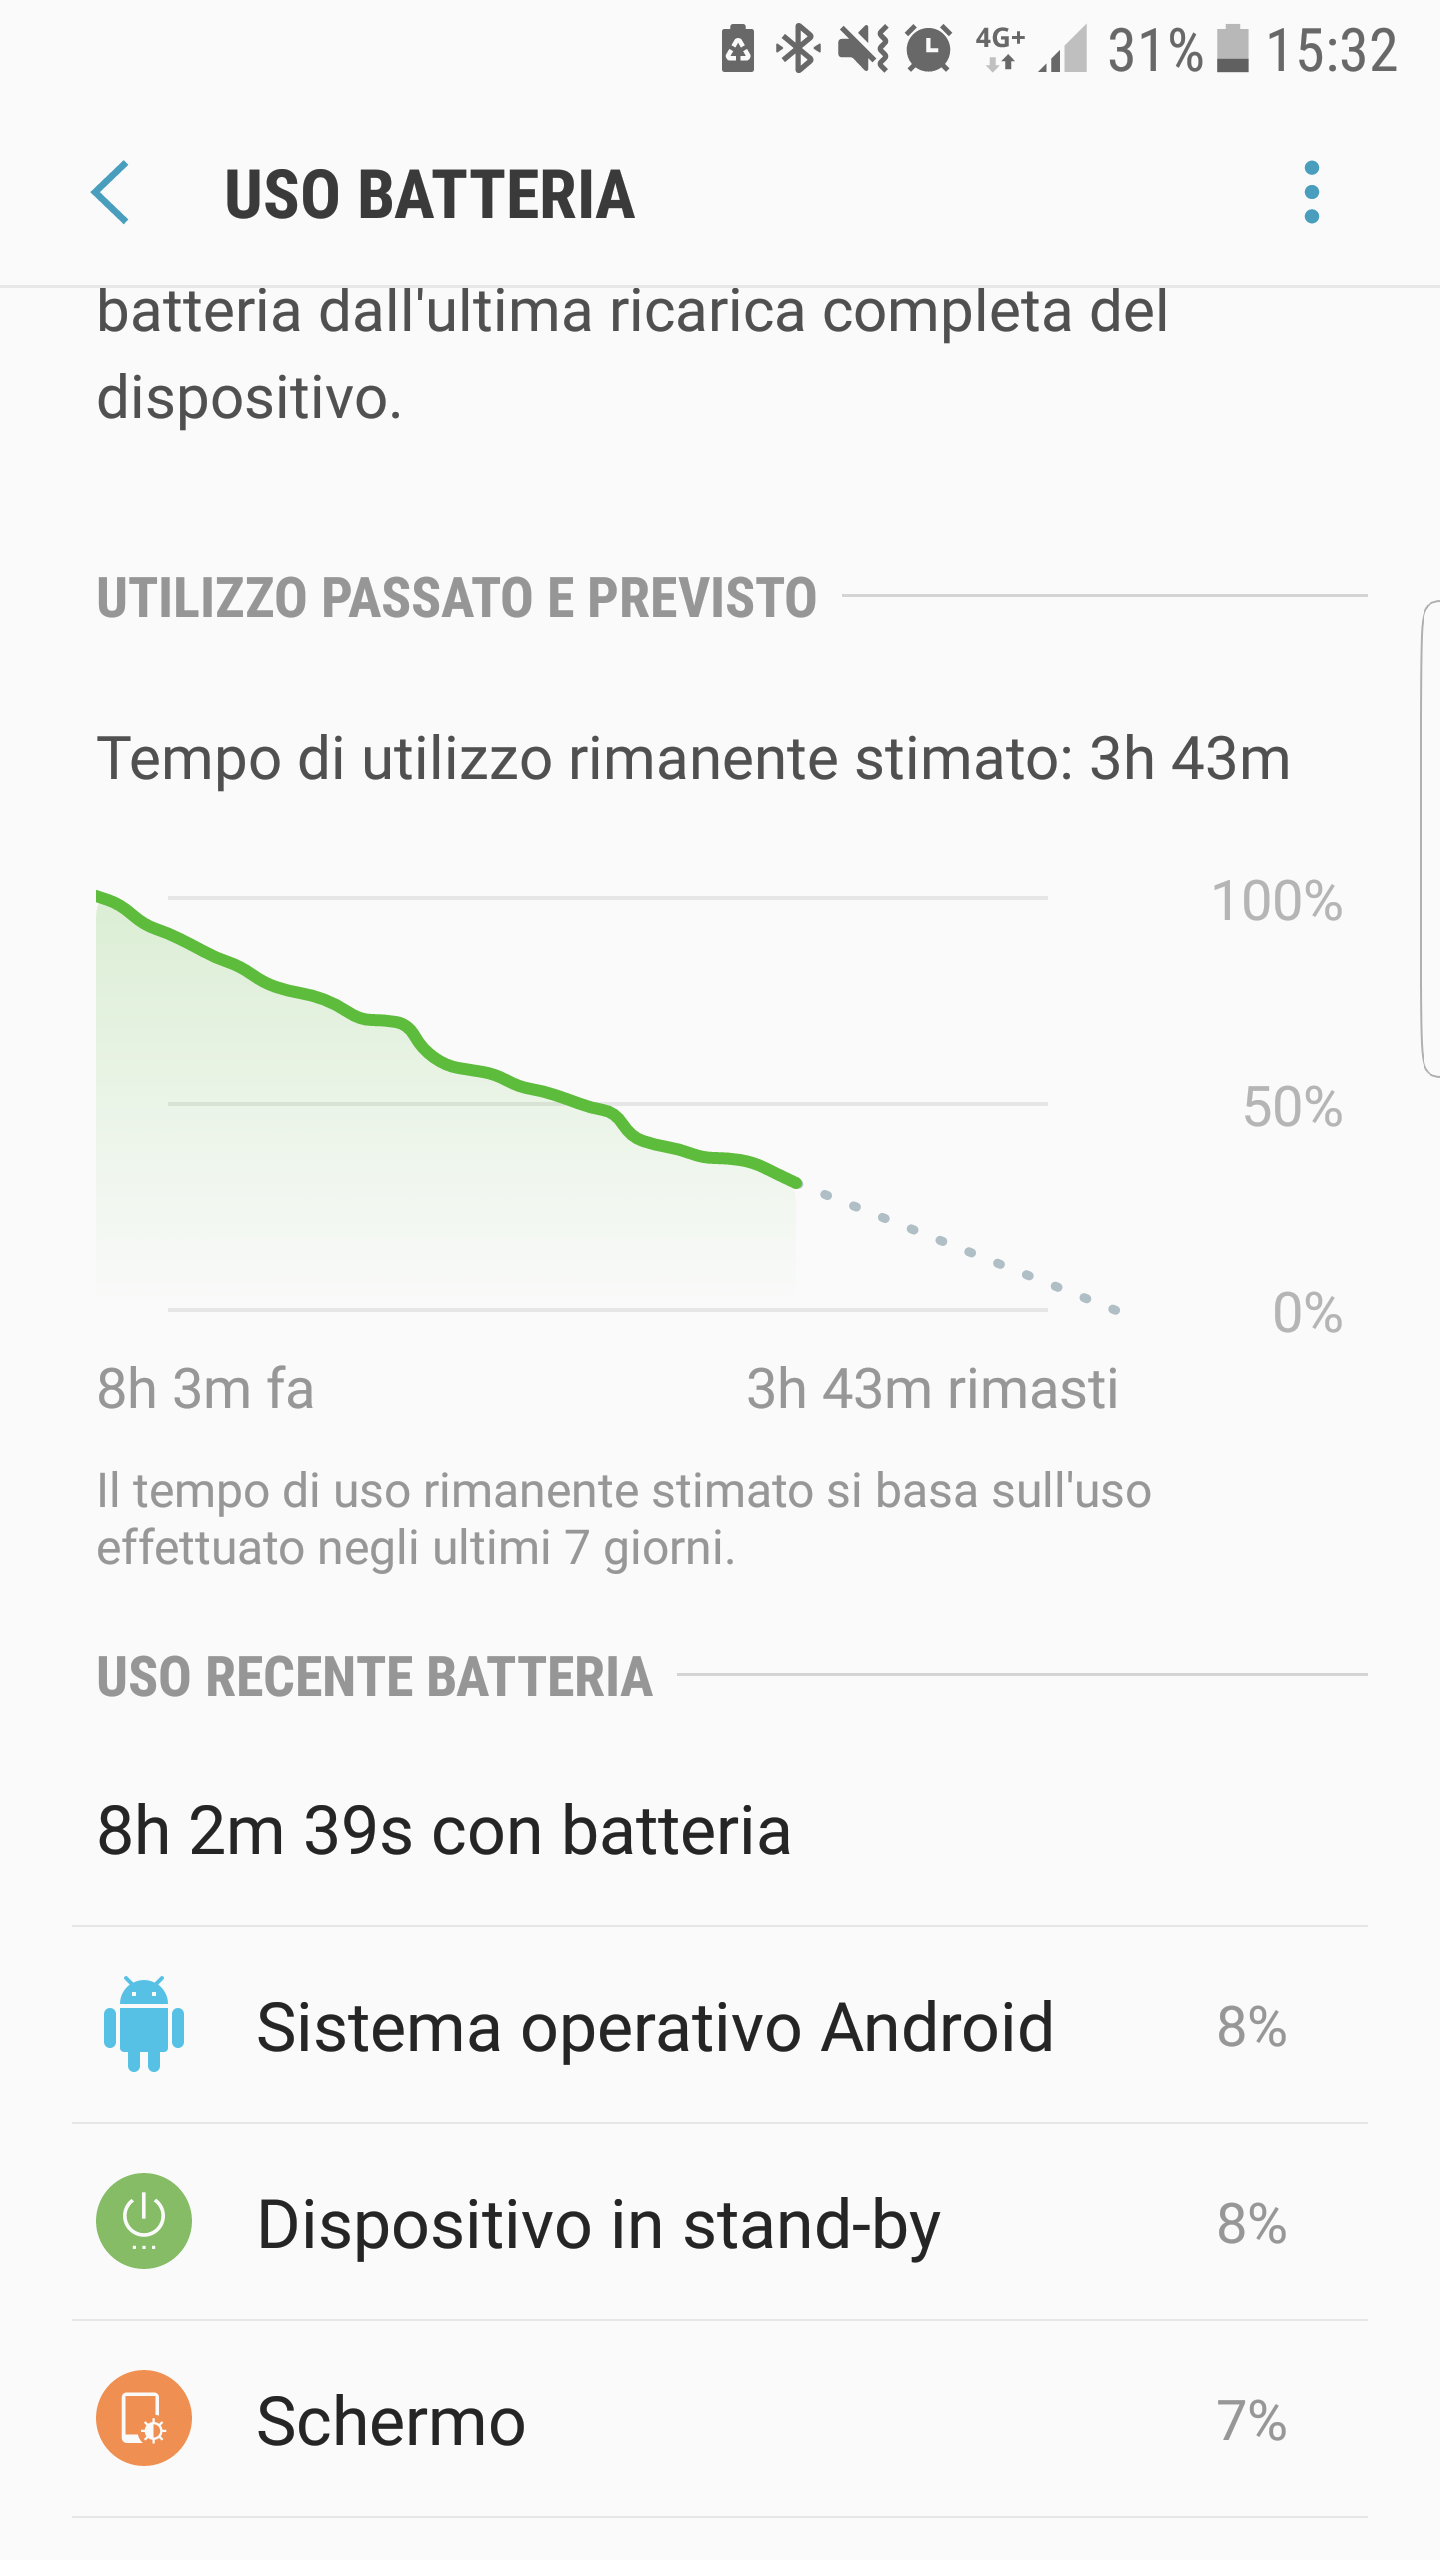 Consumo anomalo batteria a causa di Sistema operativo Android dopo ultimi  aggiornamenti - Galaxy S6 - Pagina 11 - Samsung Community